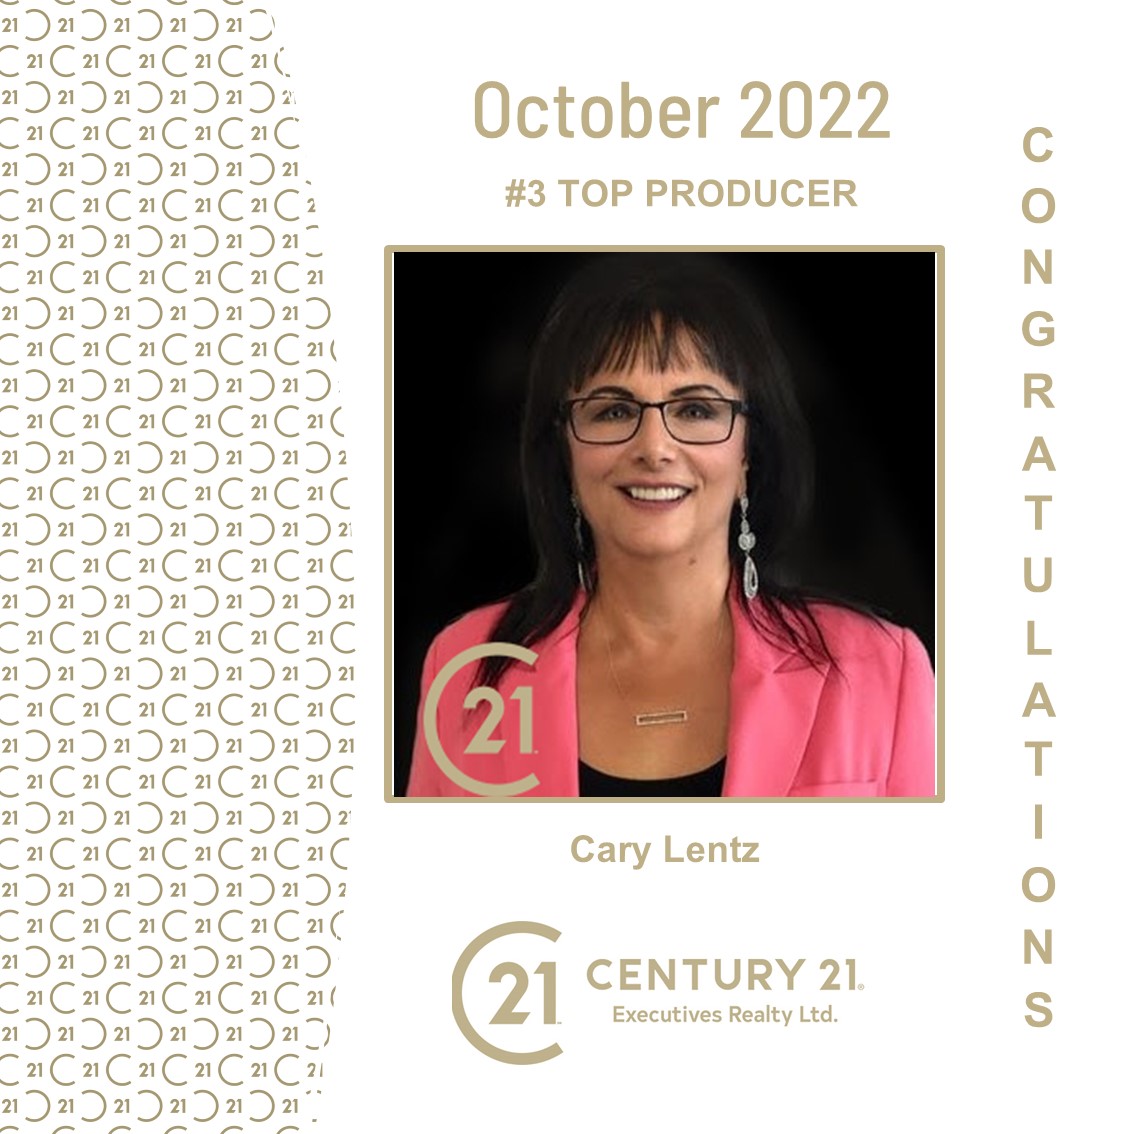 Cary Lentz - October 2022